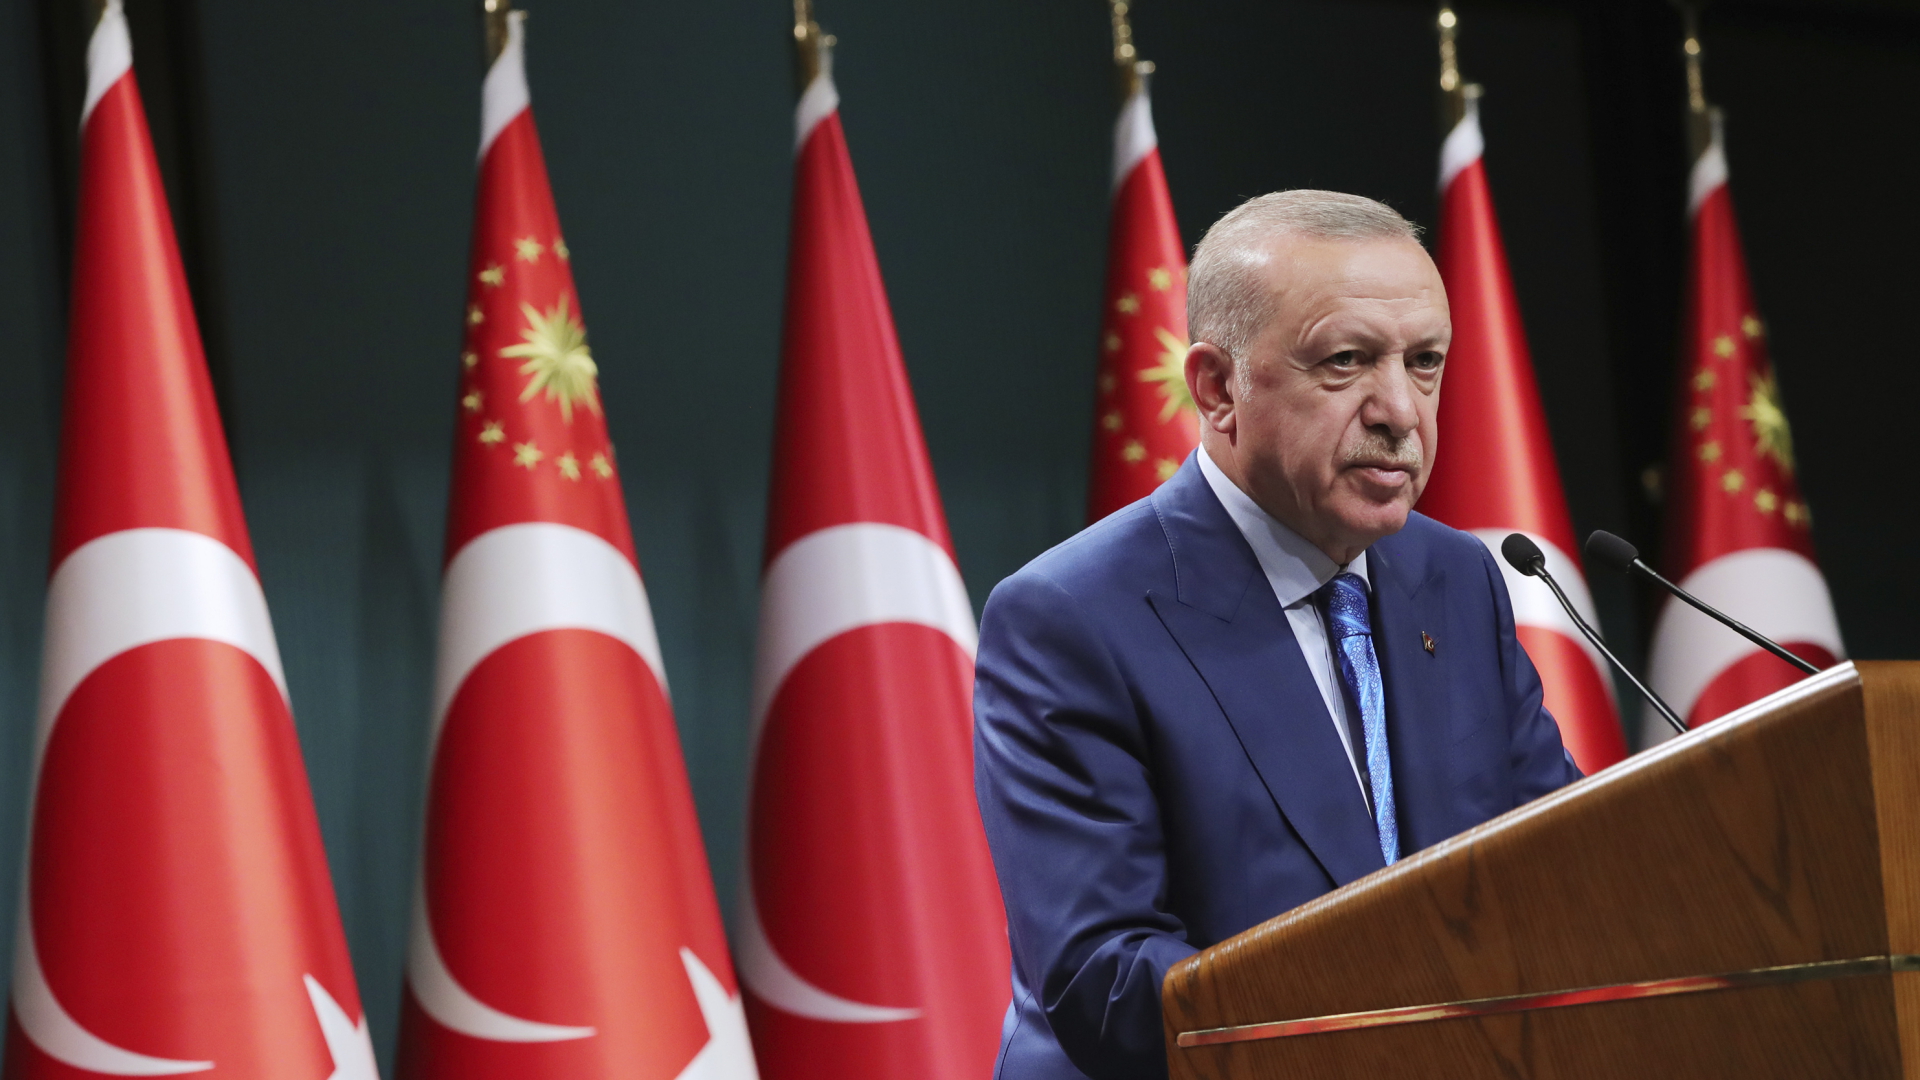 Der türkische Präsident Recep Tayyip Erdogan spricht während einer im Fernsehen übertragenen Ansprache nach einer Kabinettssitzung im August 2021. | dpa